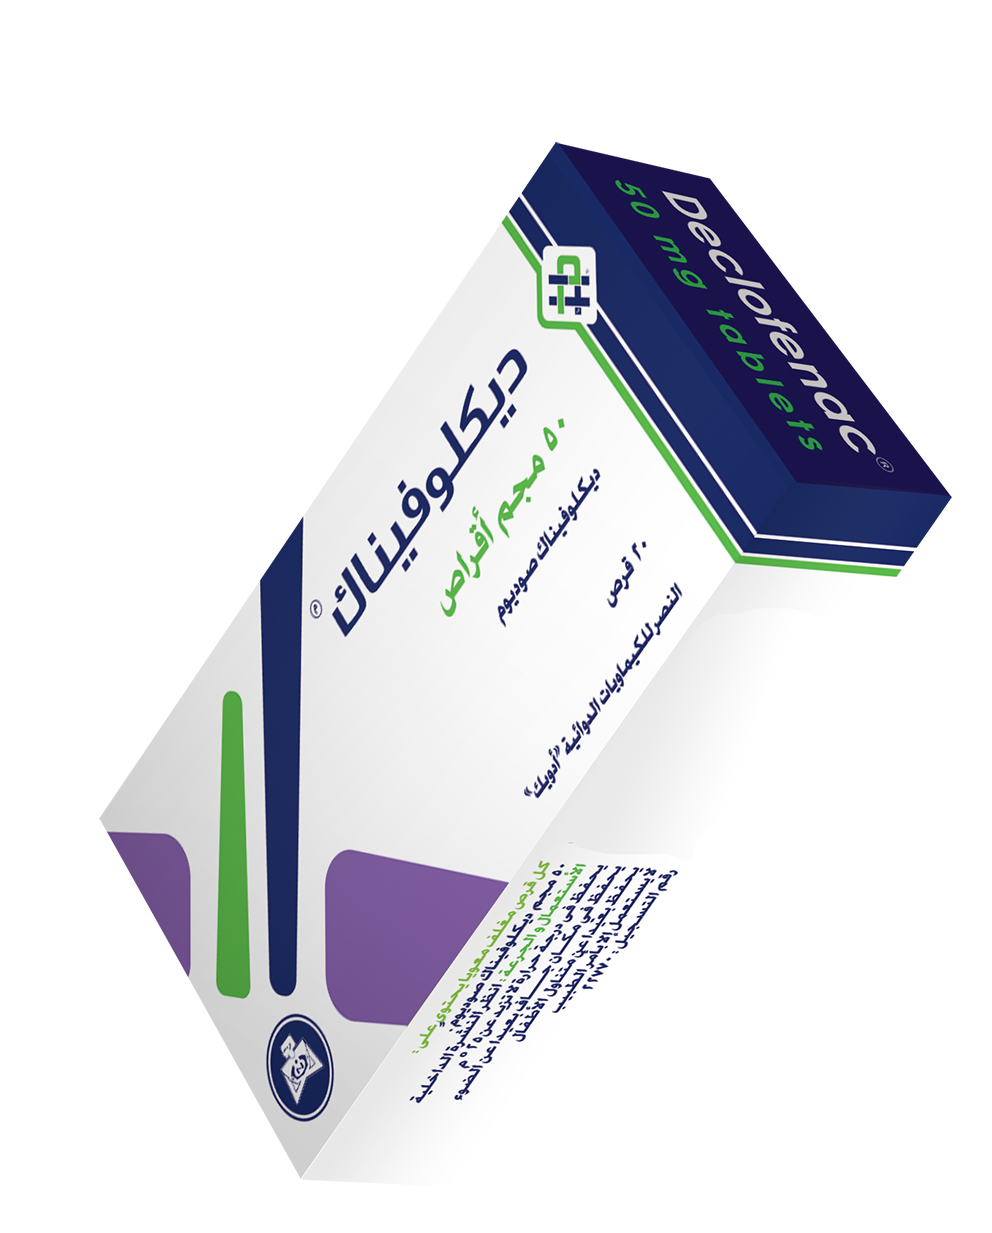 Declofenac 50 mg tablets